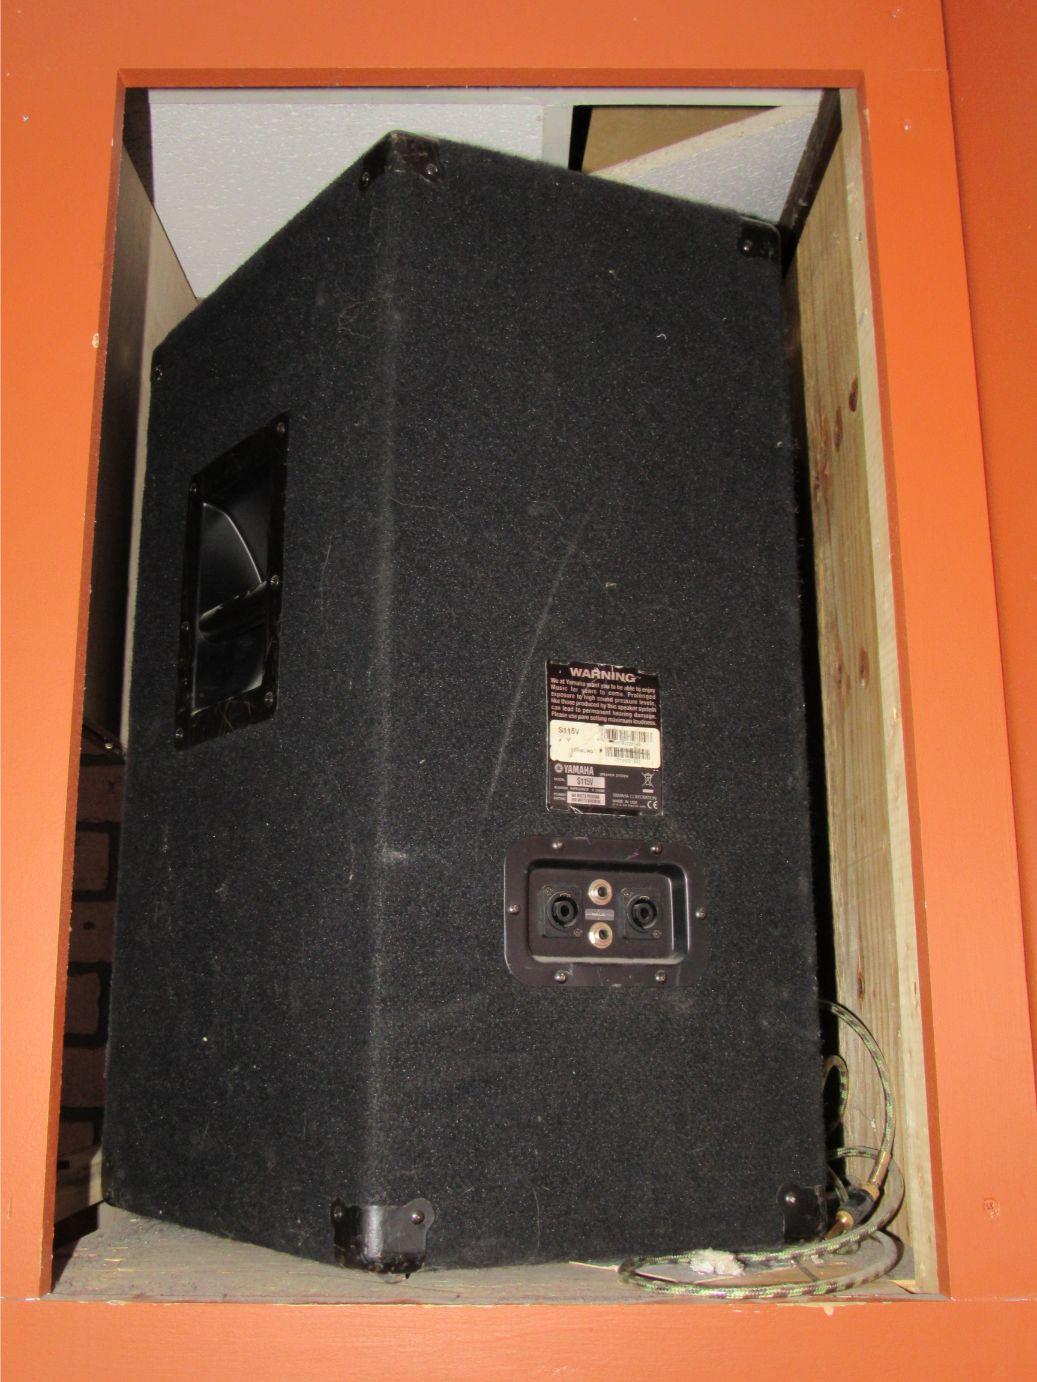 (2) Yamaha S115V Large Speakers